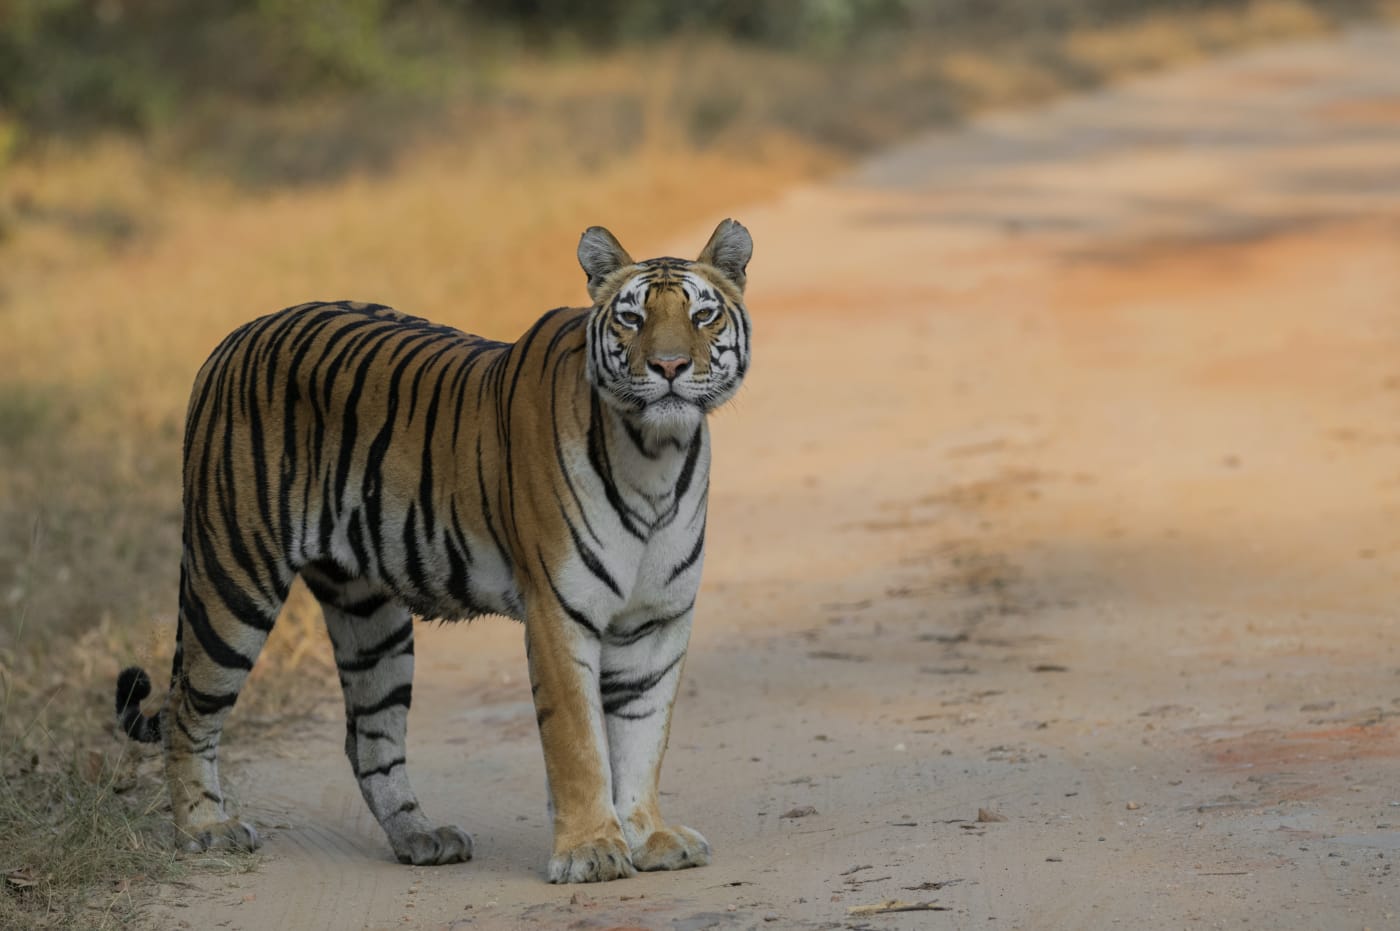 Tiger (Panthera tigris tigris) at Kanha Tiger Reserve, Madhya Pradesh, India.